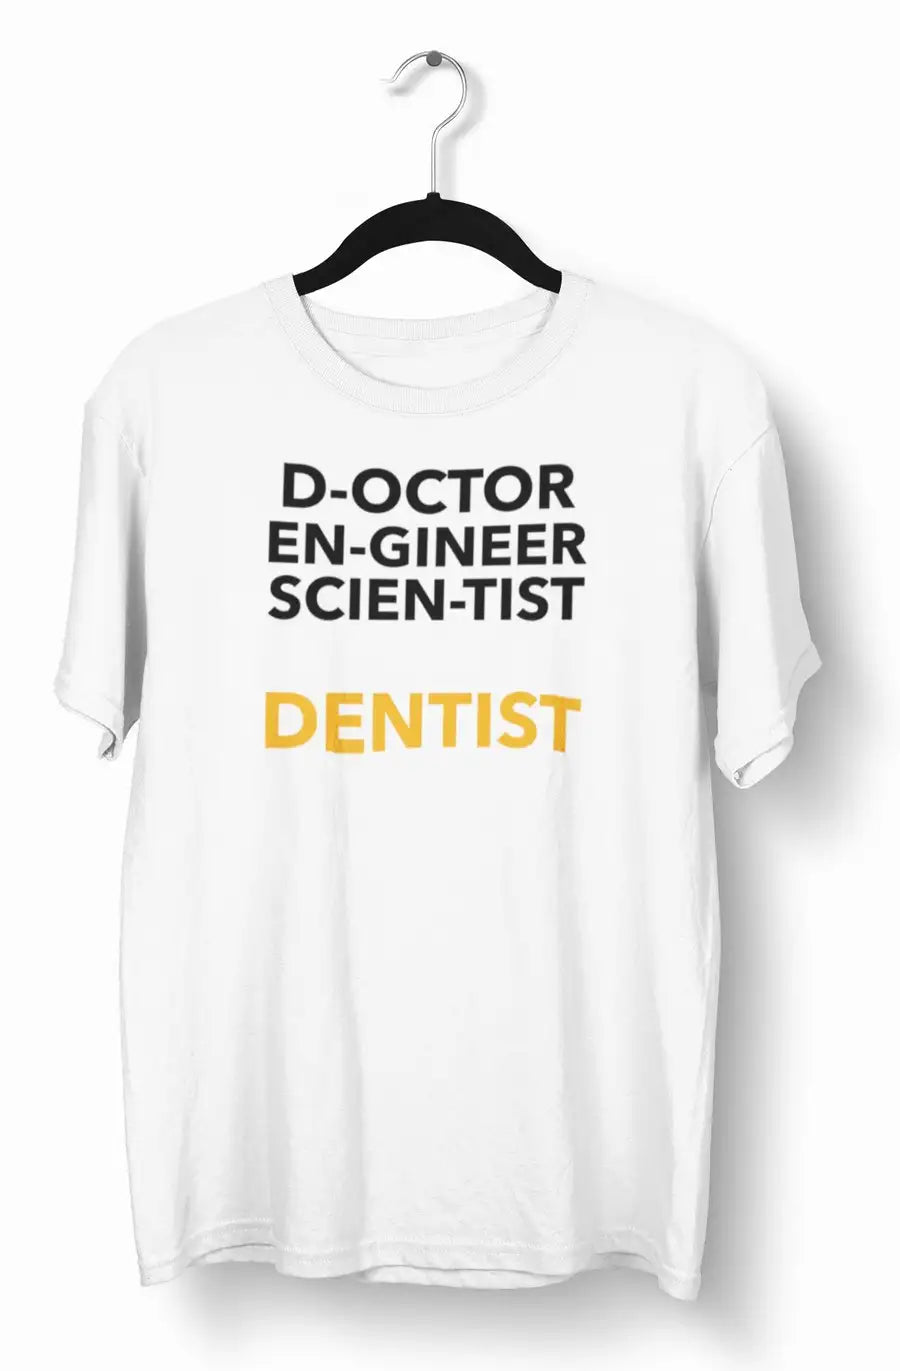 Dentist "Pioneer of 3 Skills" White T-Shirt | Premium Design | Catch My Drift India - Catch My Drift India Clothing clothing, dentist, made in india, shirt, t shirt, tshirt, white